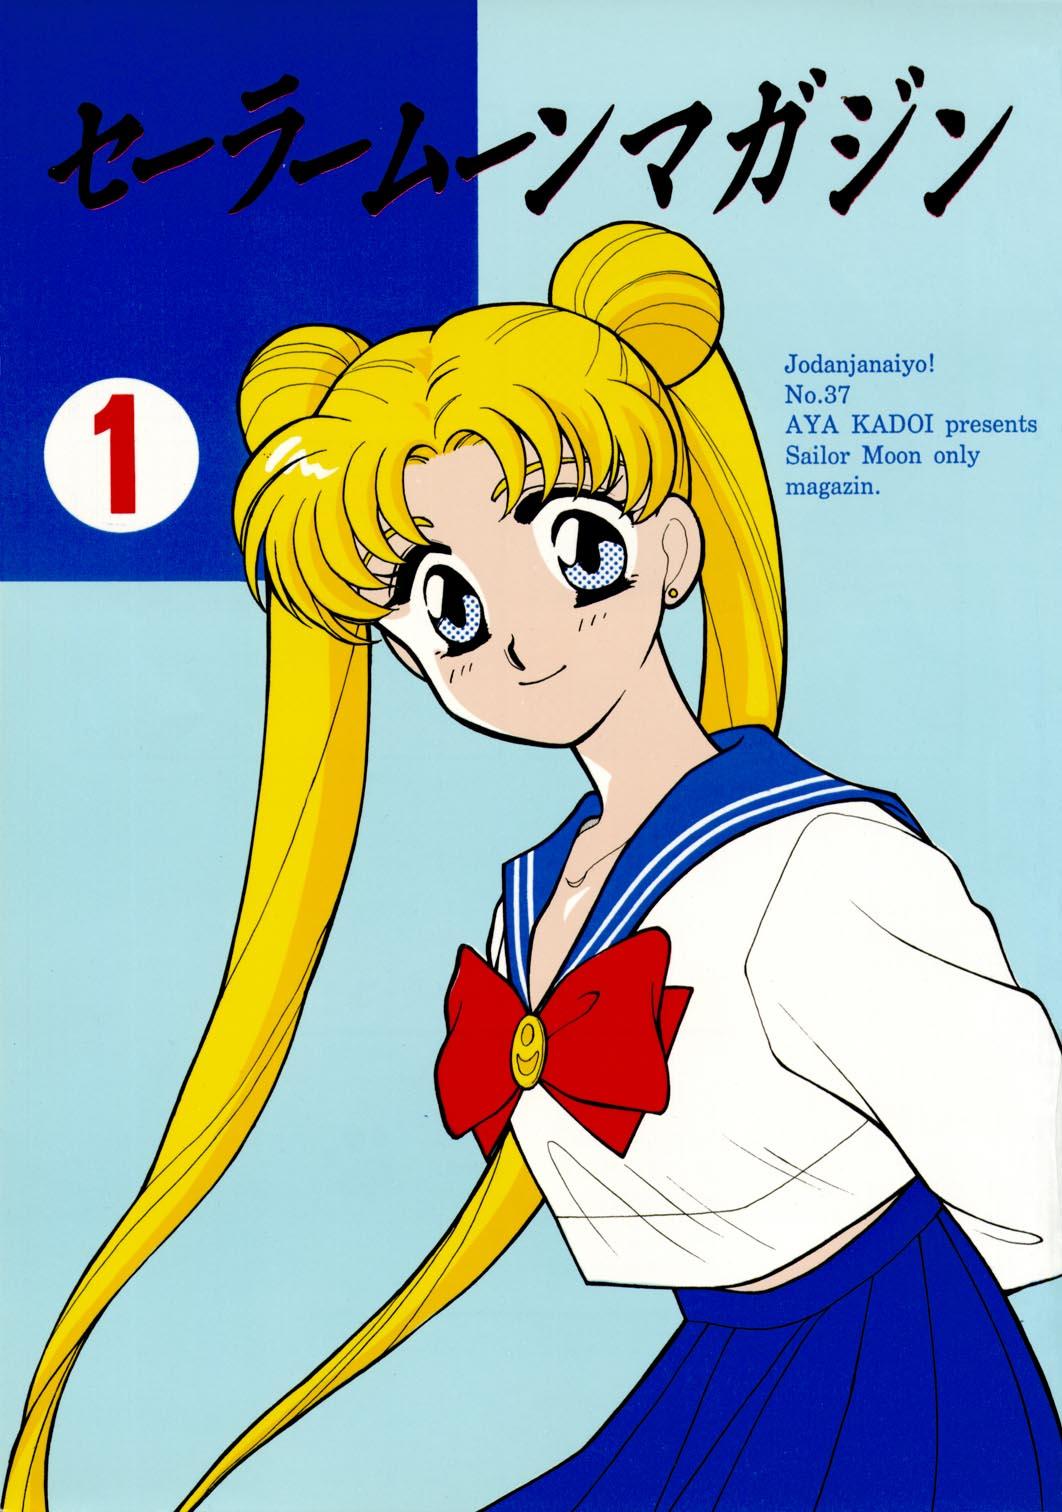 Red Head Sailor Moon JodanJanaiyo - Sailor moon Assfucked - Picture 1